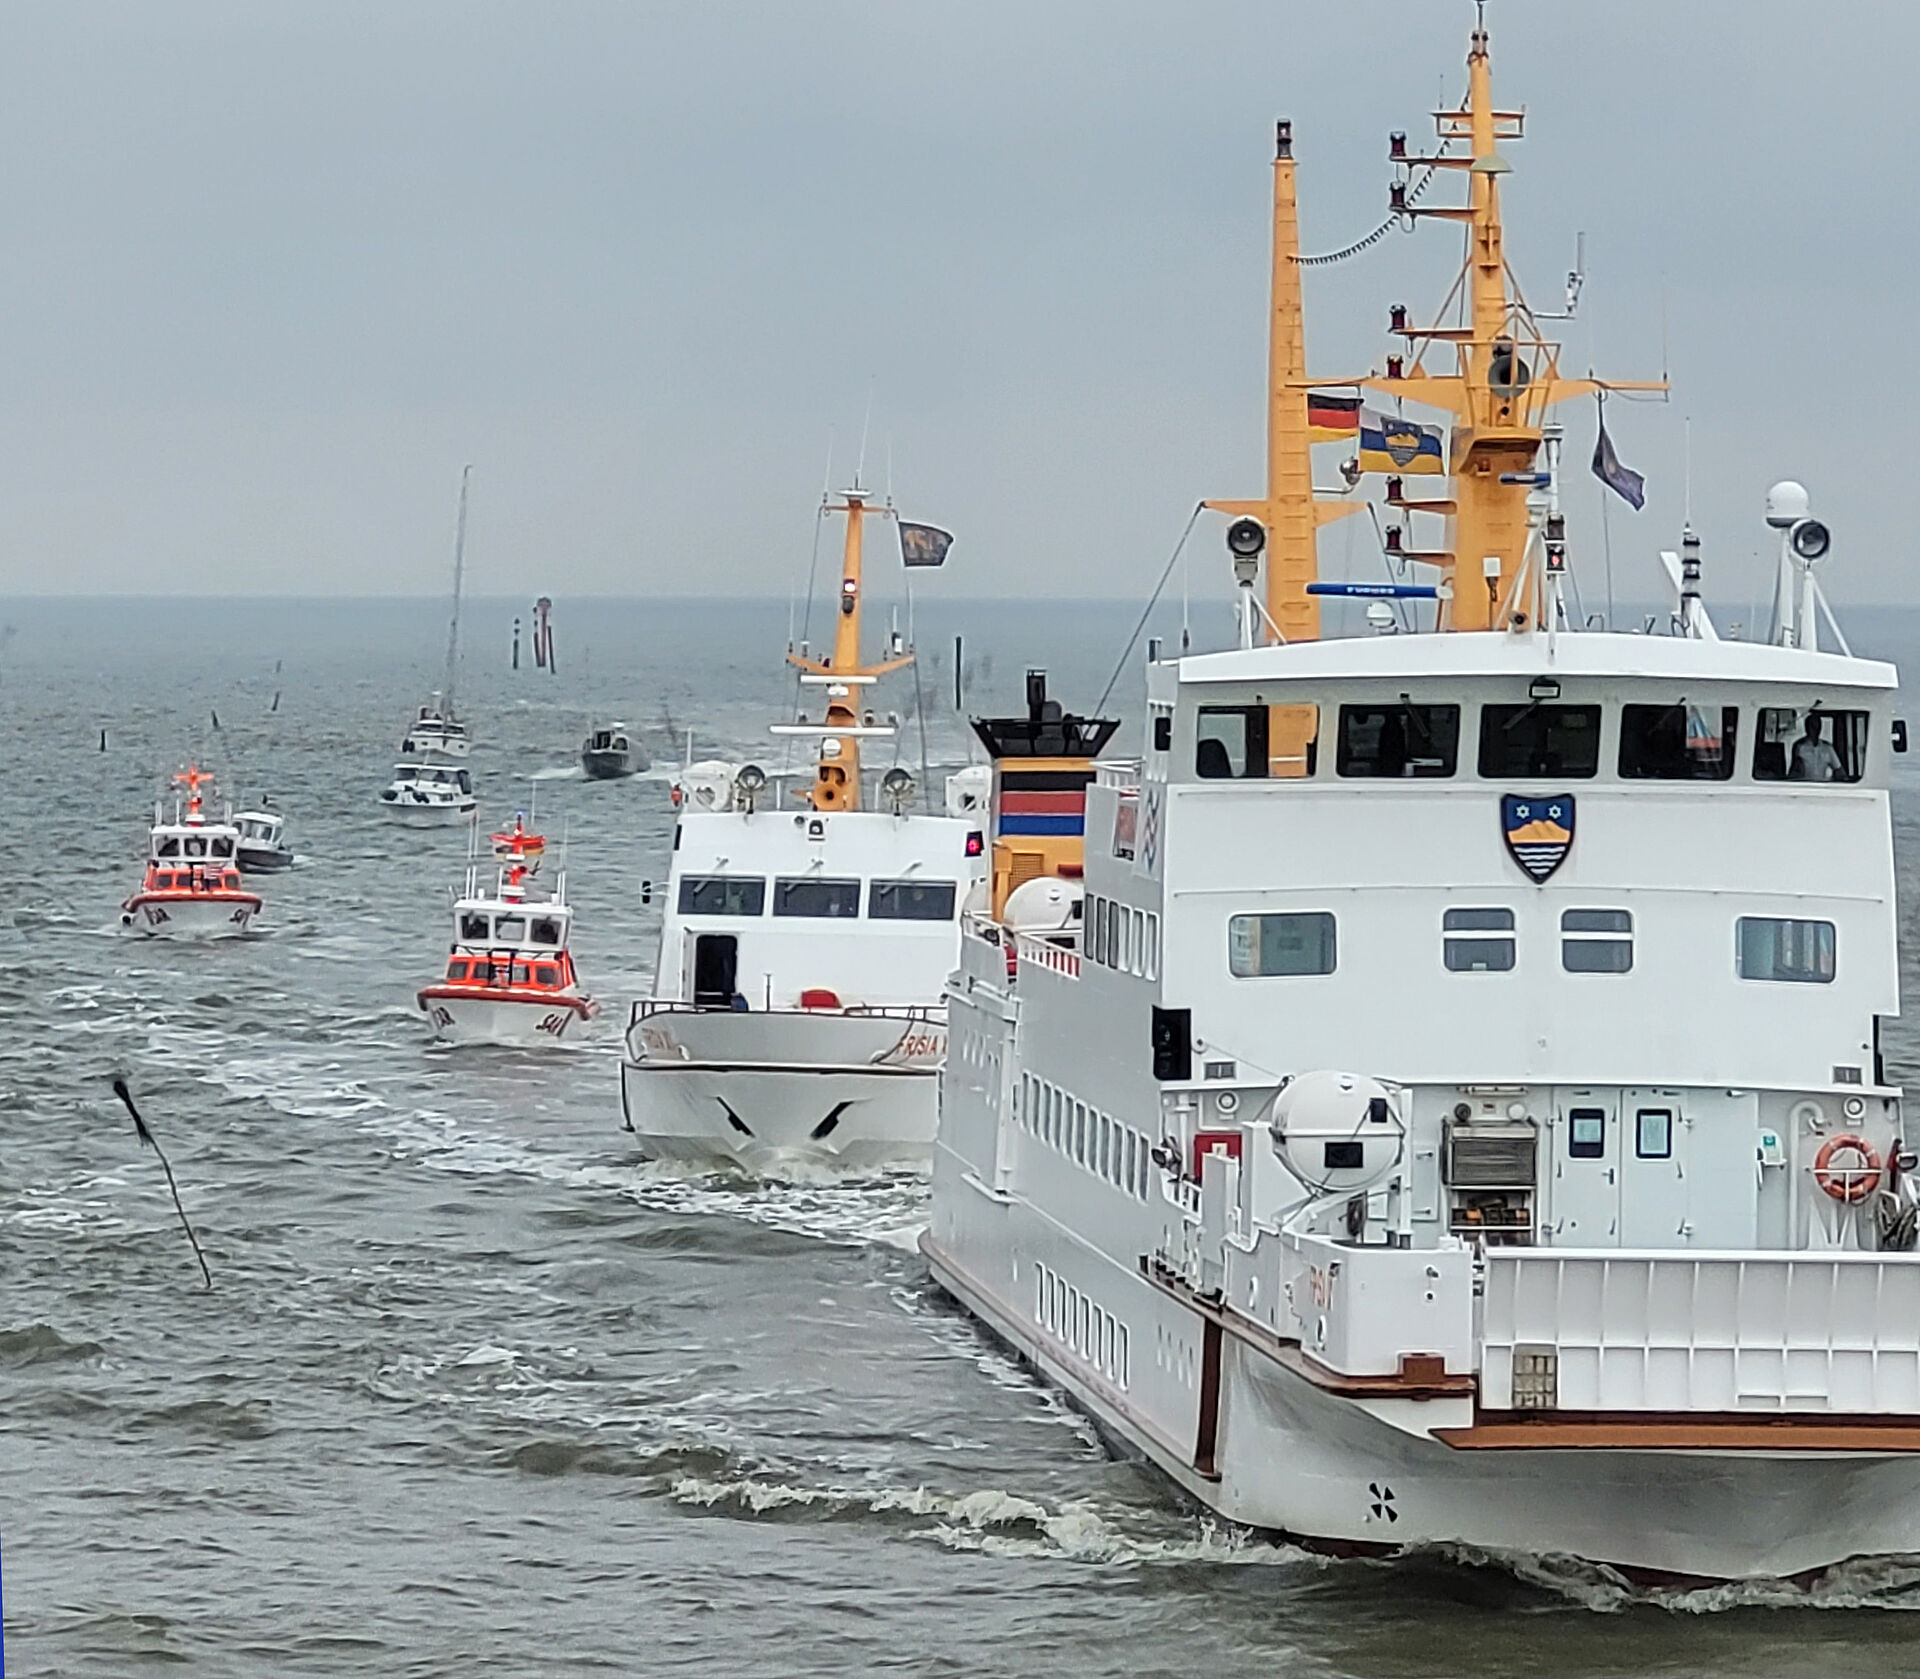 Inselfähre führt Flotte von kleinen Booten und Schiffen samt Seenotrettungskreuzer vor Juist an